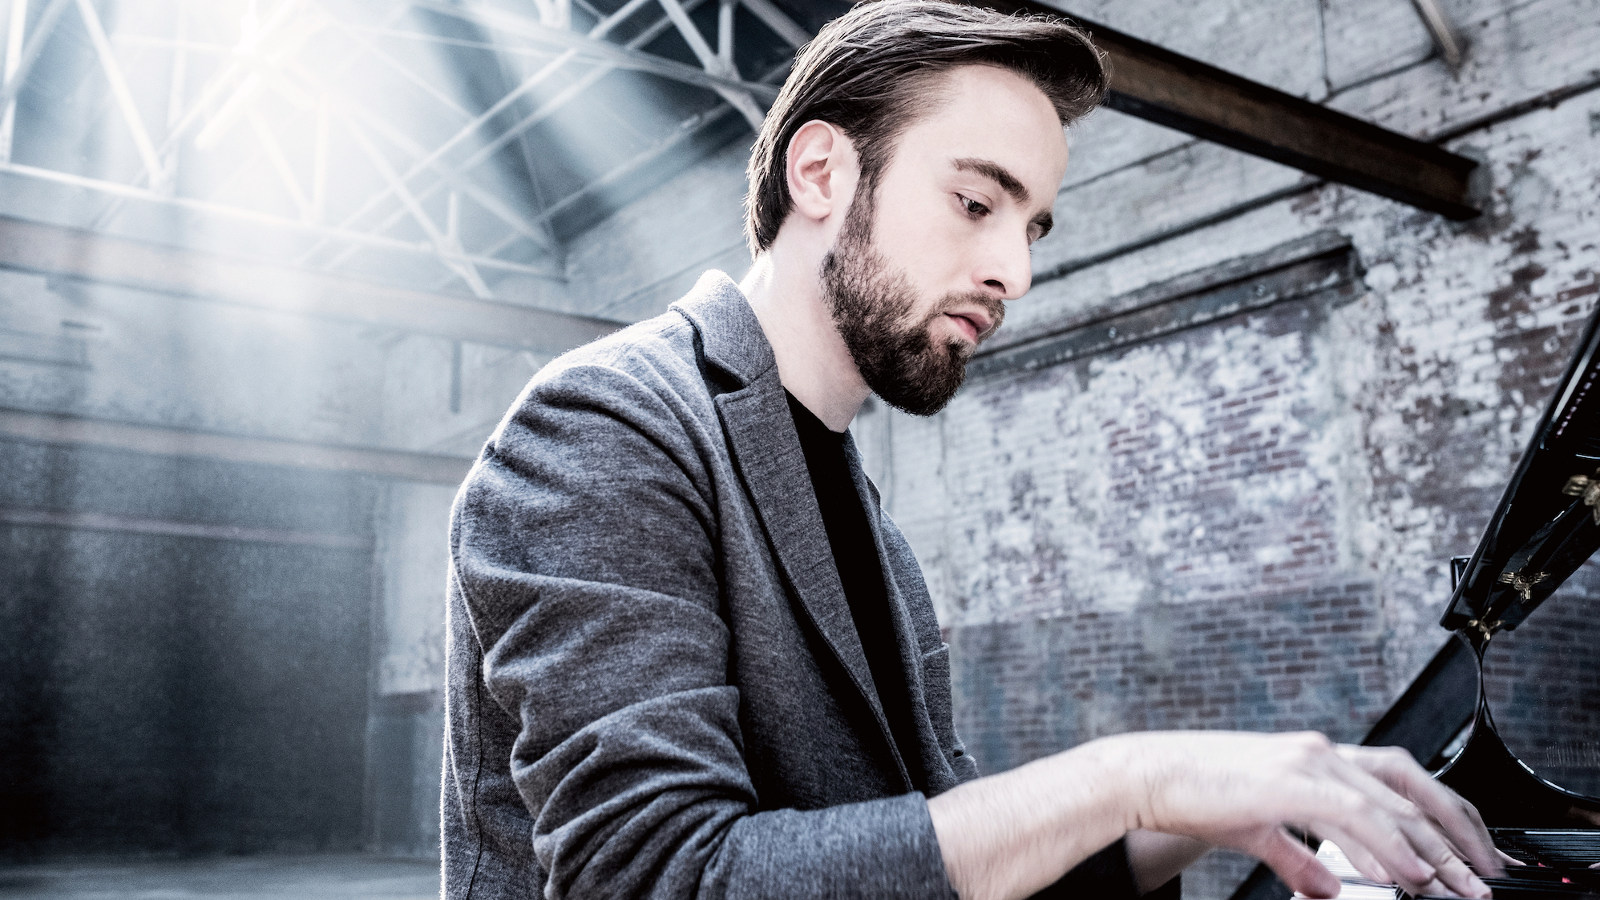 Kuvassa on Daniil Trifonov soittamassa pianoa harmaassa takissa. Kuva on harmaa sävytteinen.